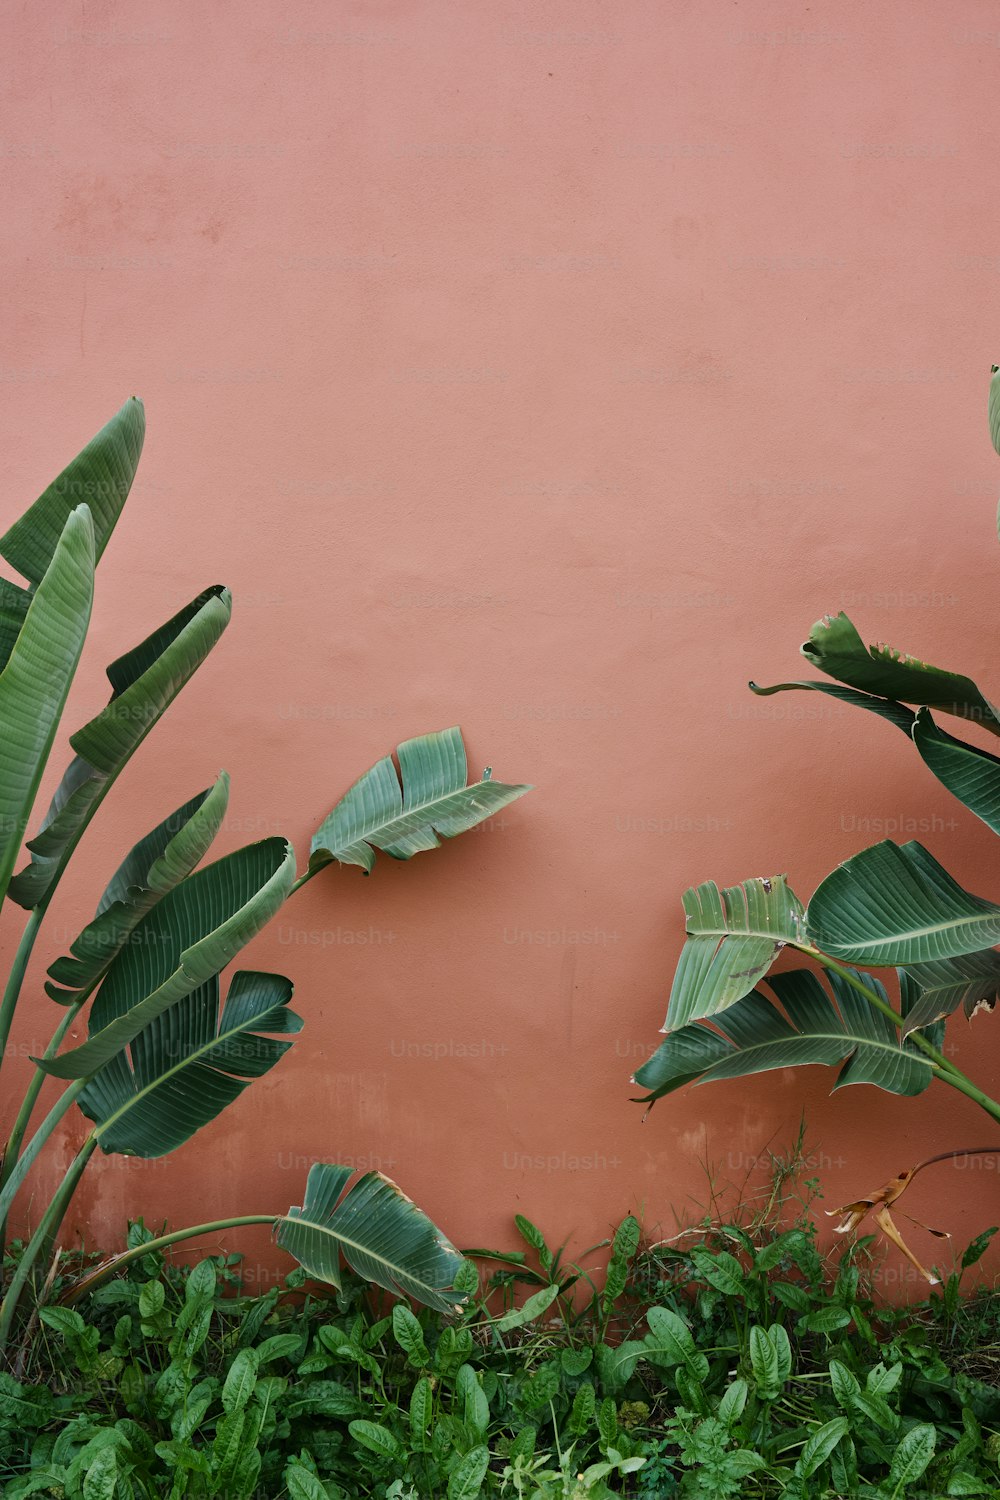 赤い壁とその隣に緑の植物の束